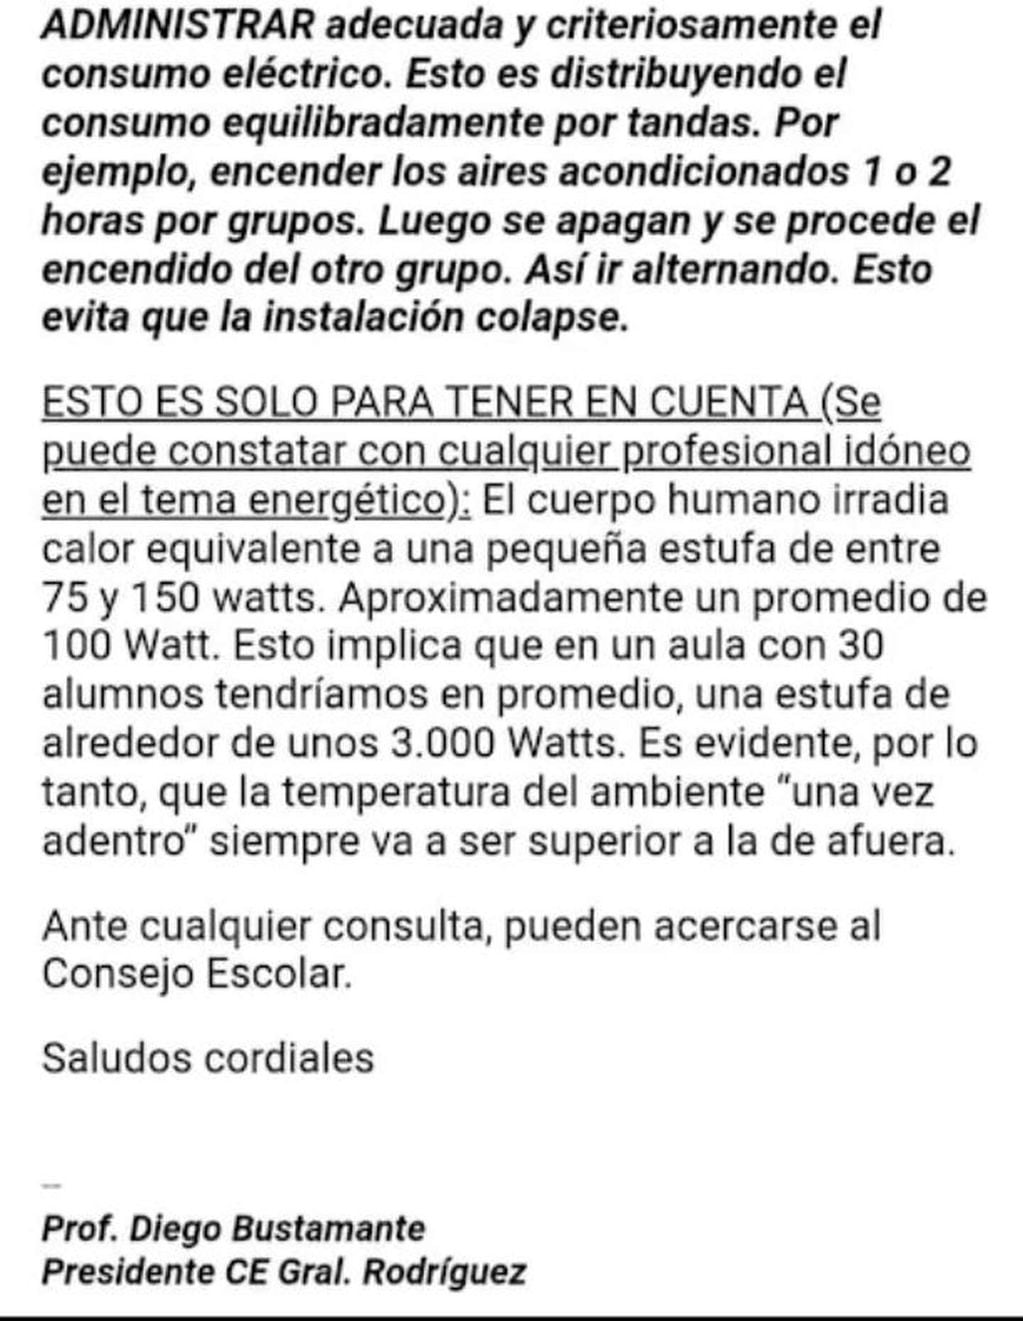 El insólito comunicado emitido por el Consejo Escolar de General Rodríguez.